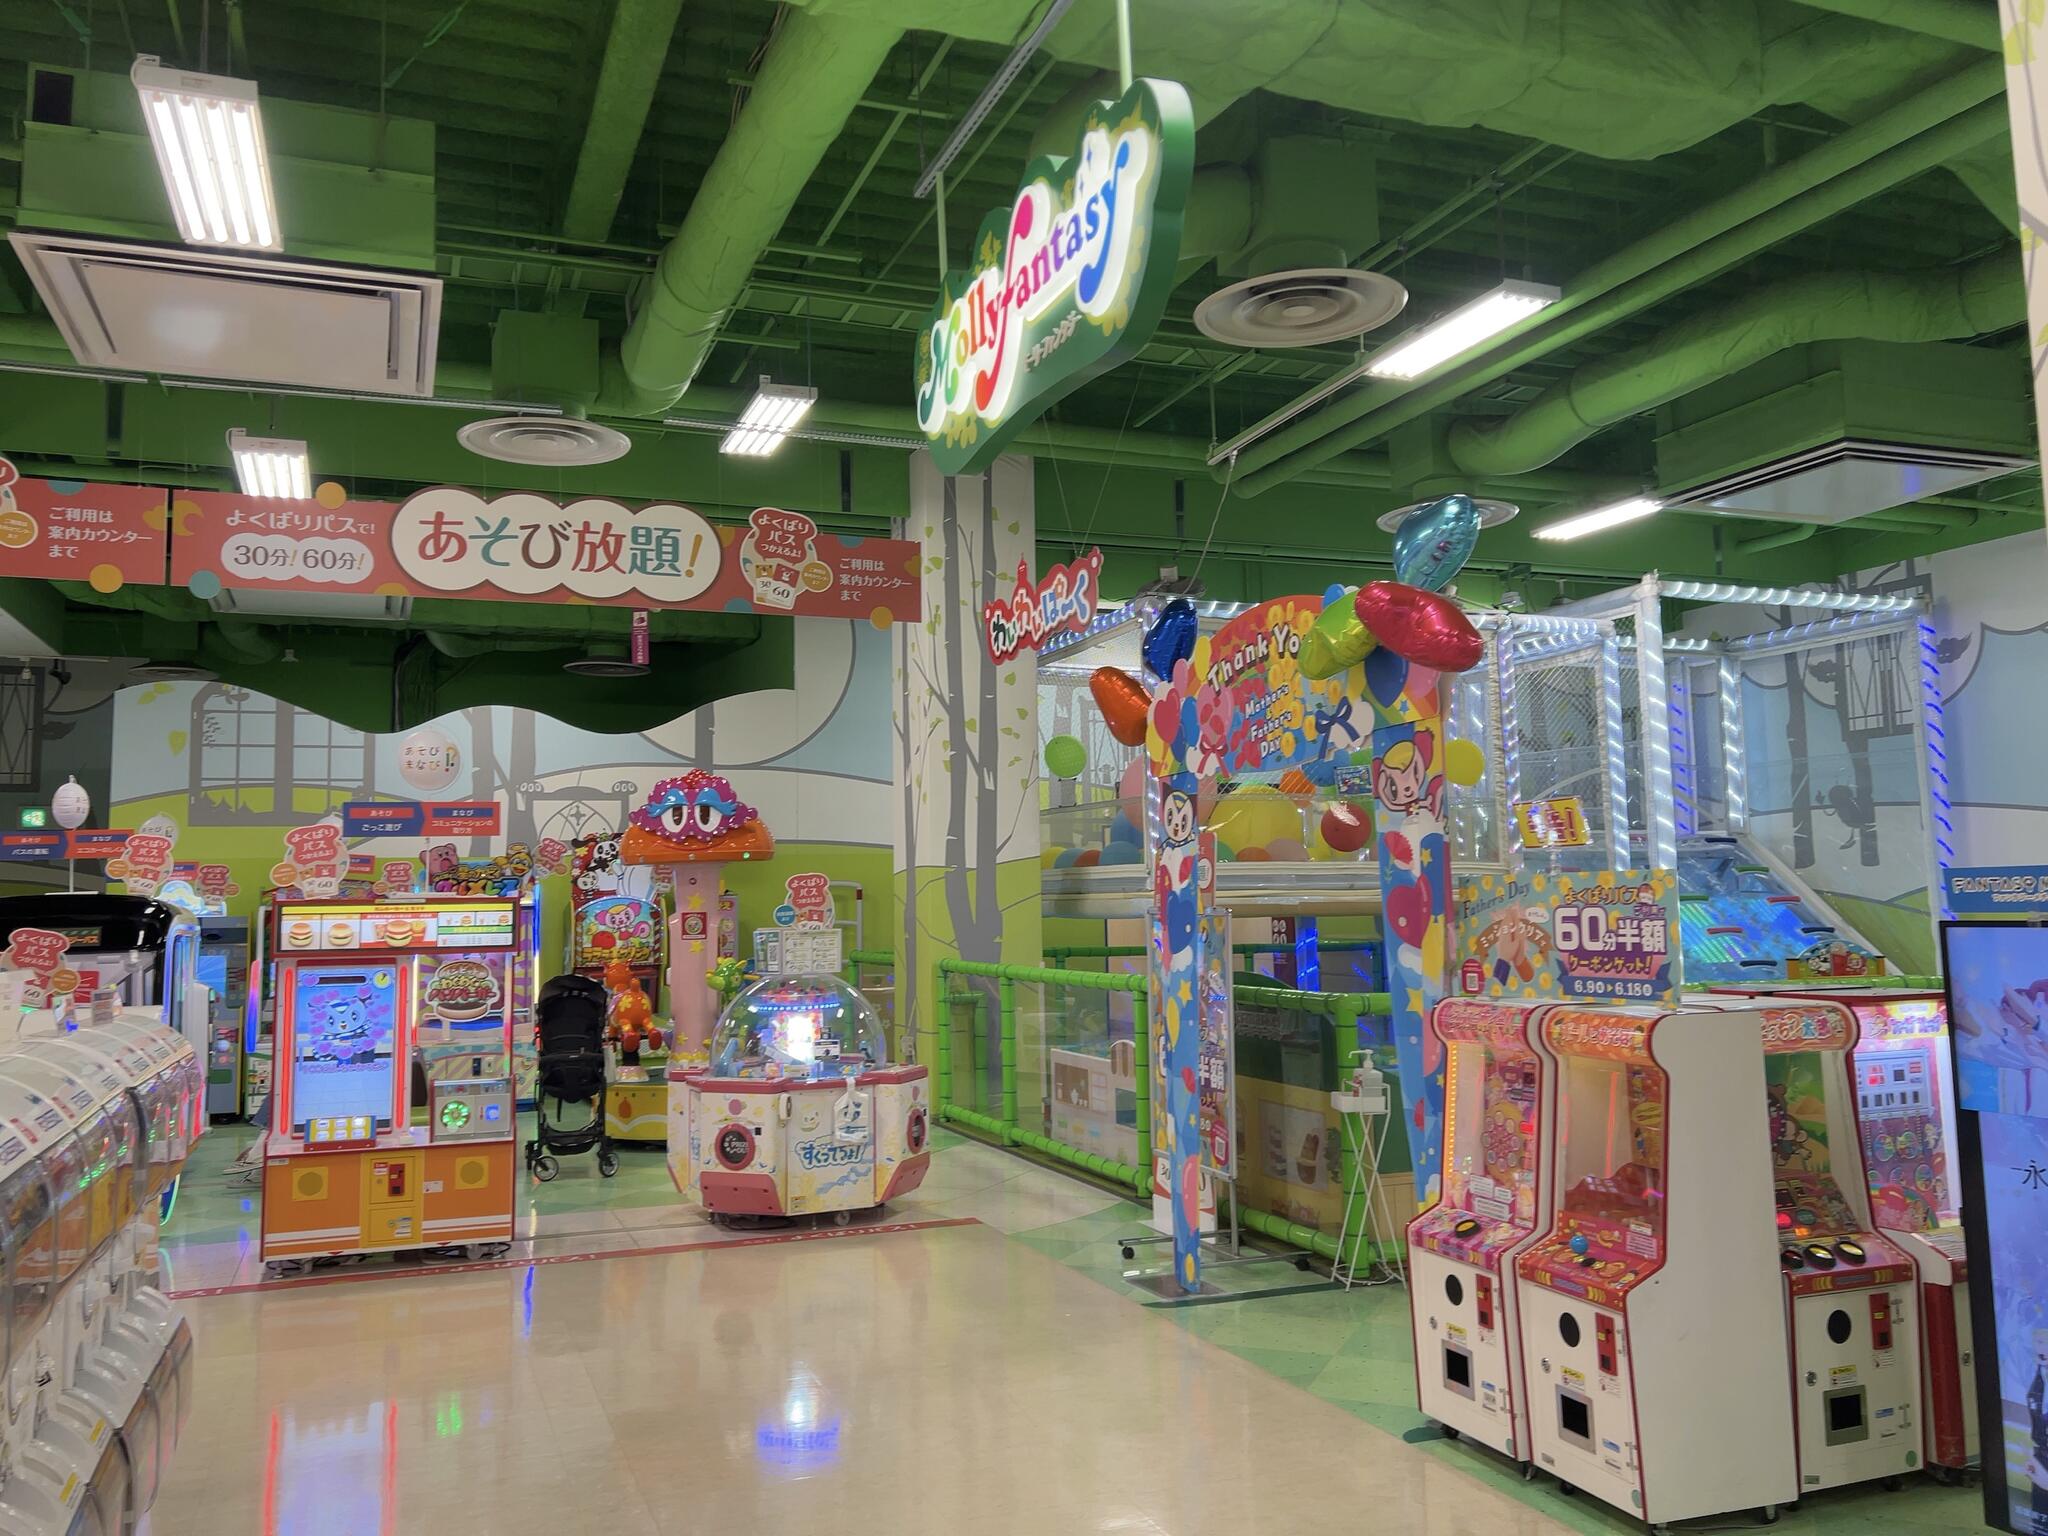 モーリーファンタジー 伊丹店 - 伊丹市藤ノ木/ゲームセンター | Yahoo